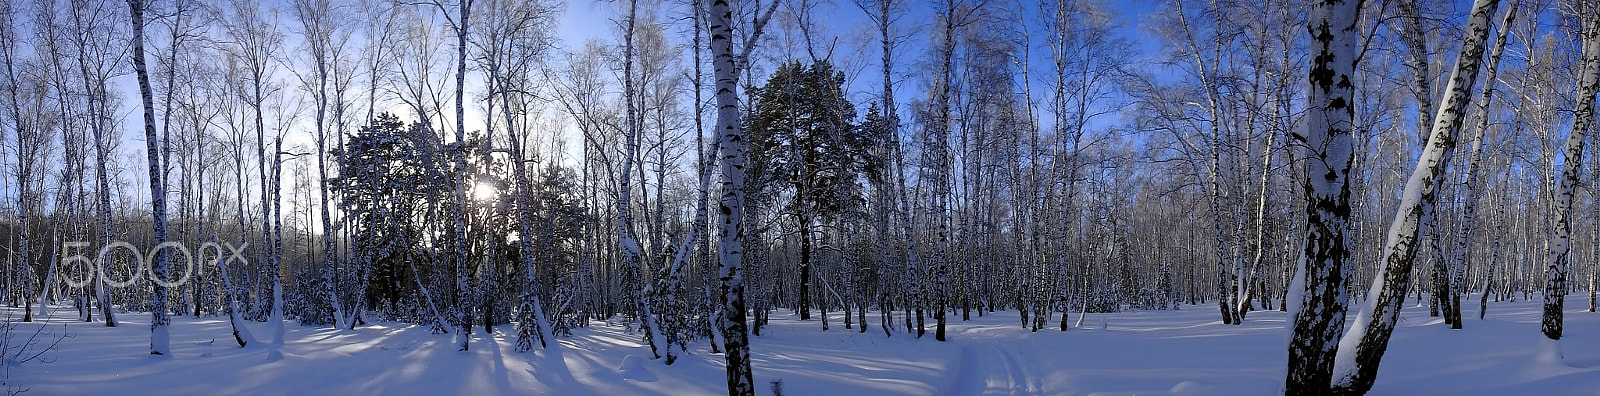 Olympus TG-860 sample photo. Зима в лесу photography